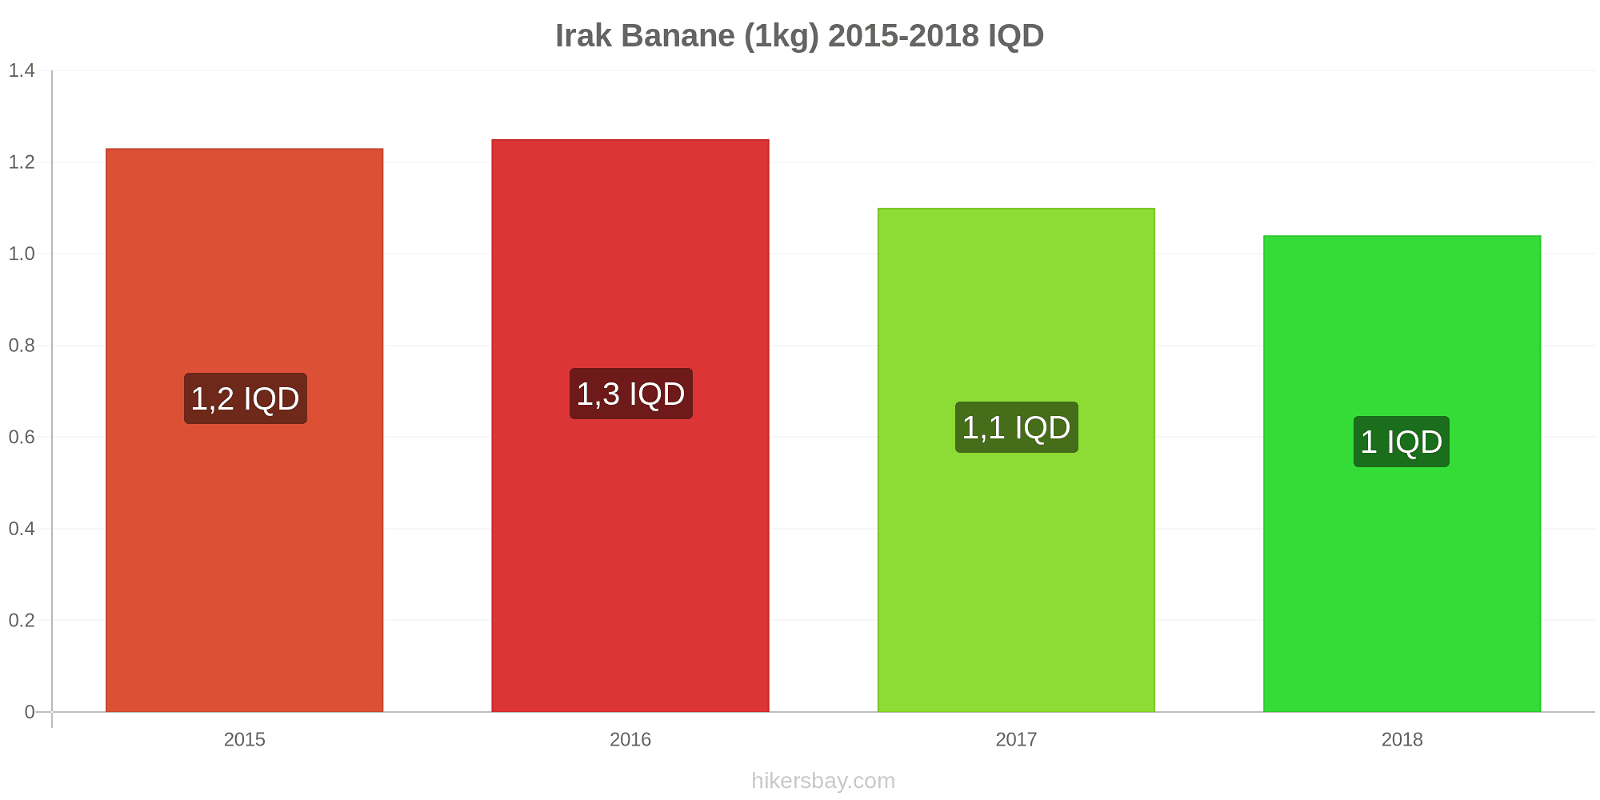 Irak Preisänderungen Bananen (1kg) hikersbay.com